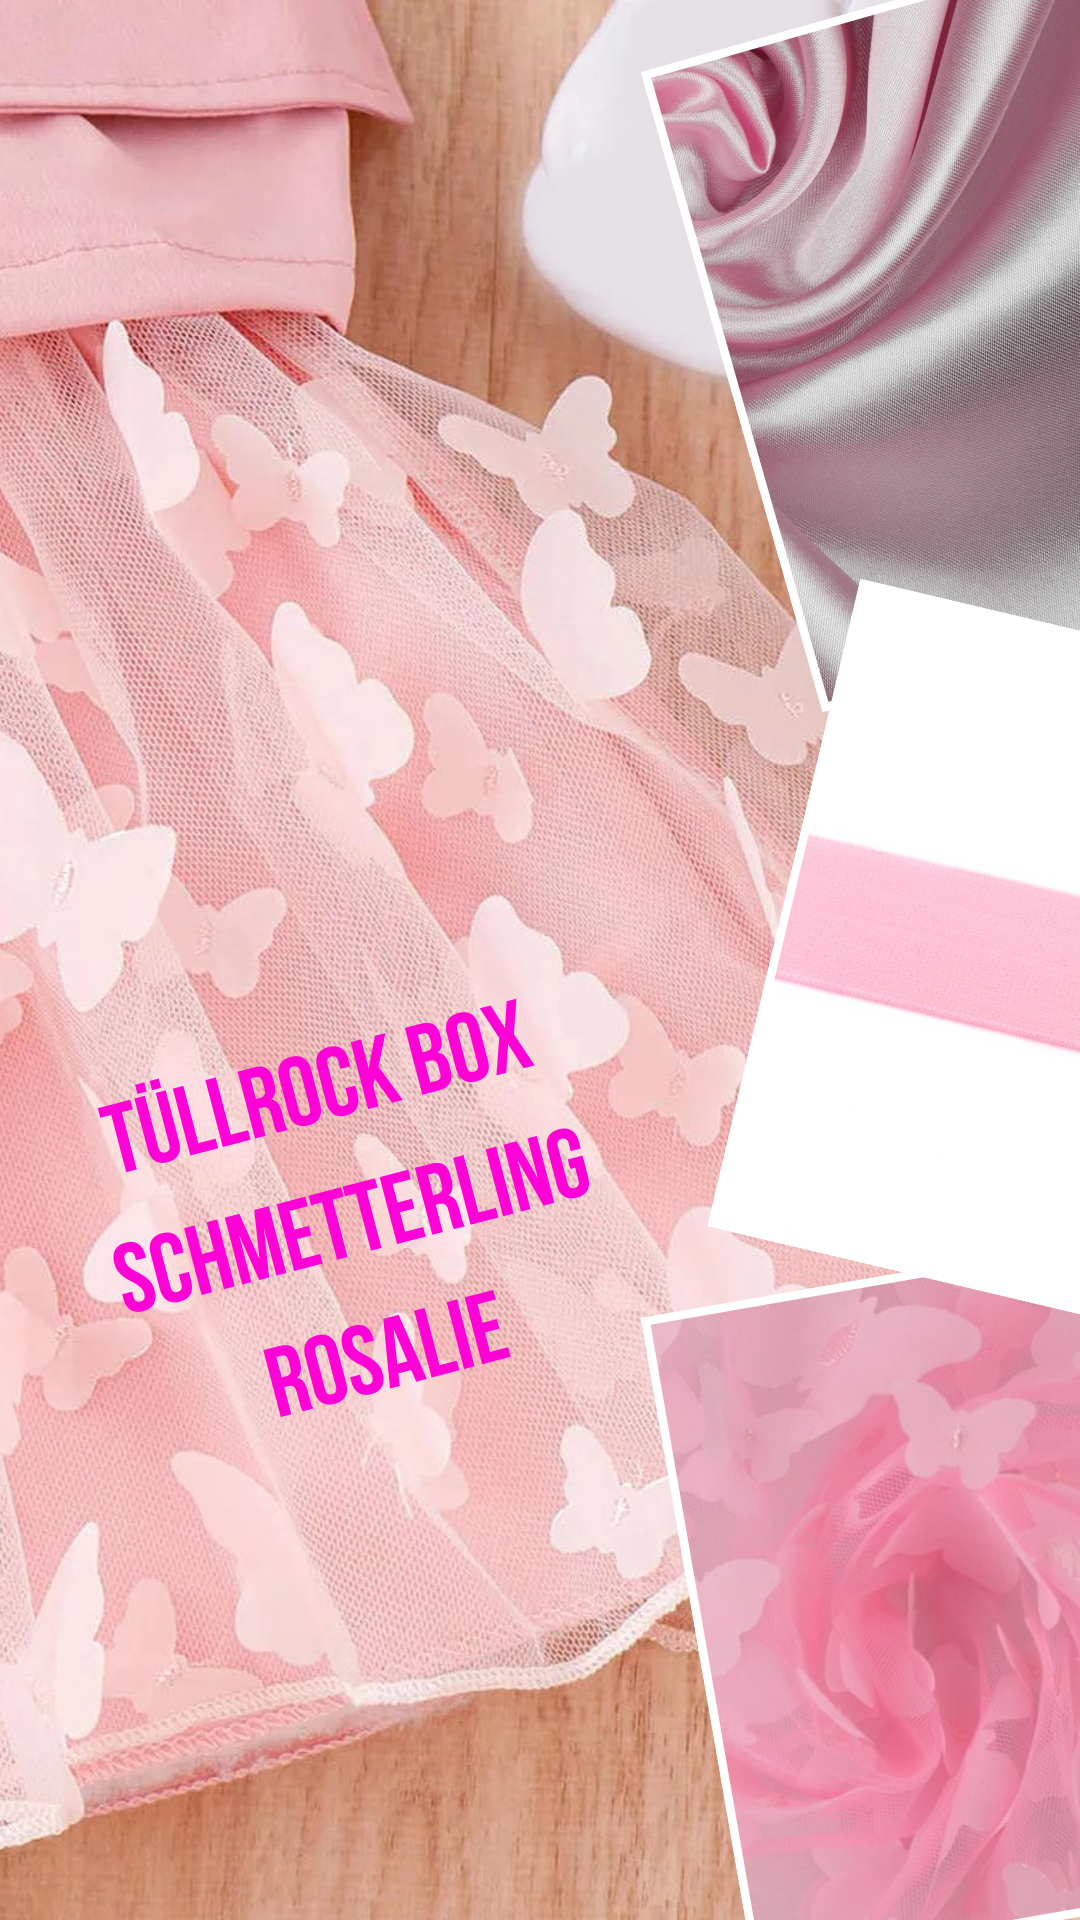 Crew Box Tüllrock Fairy Kinder die Kleidermacherin Schmetterling Rosalie 